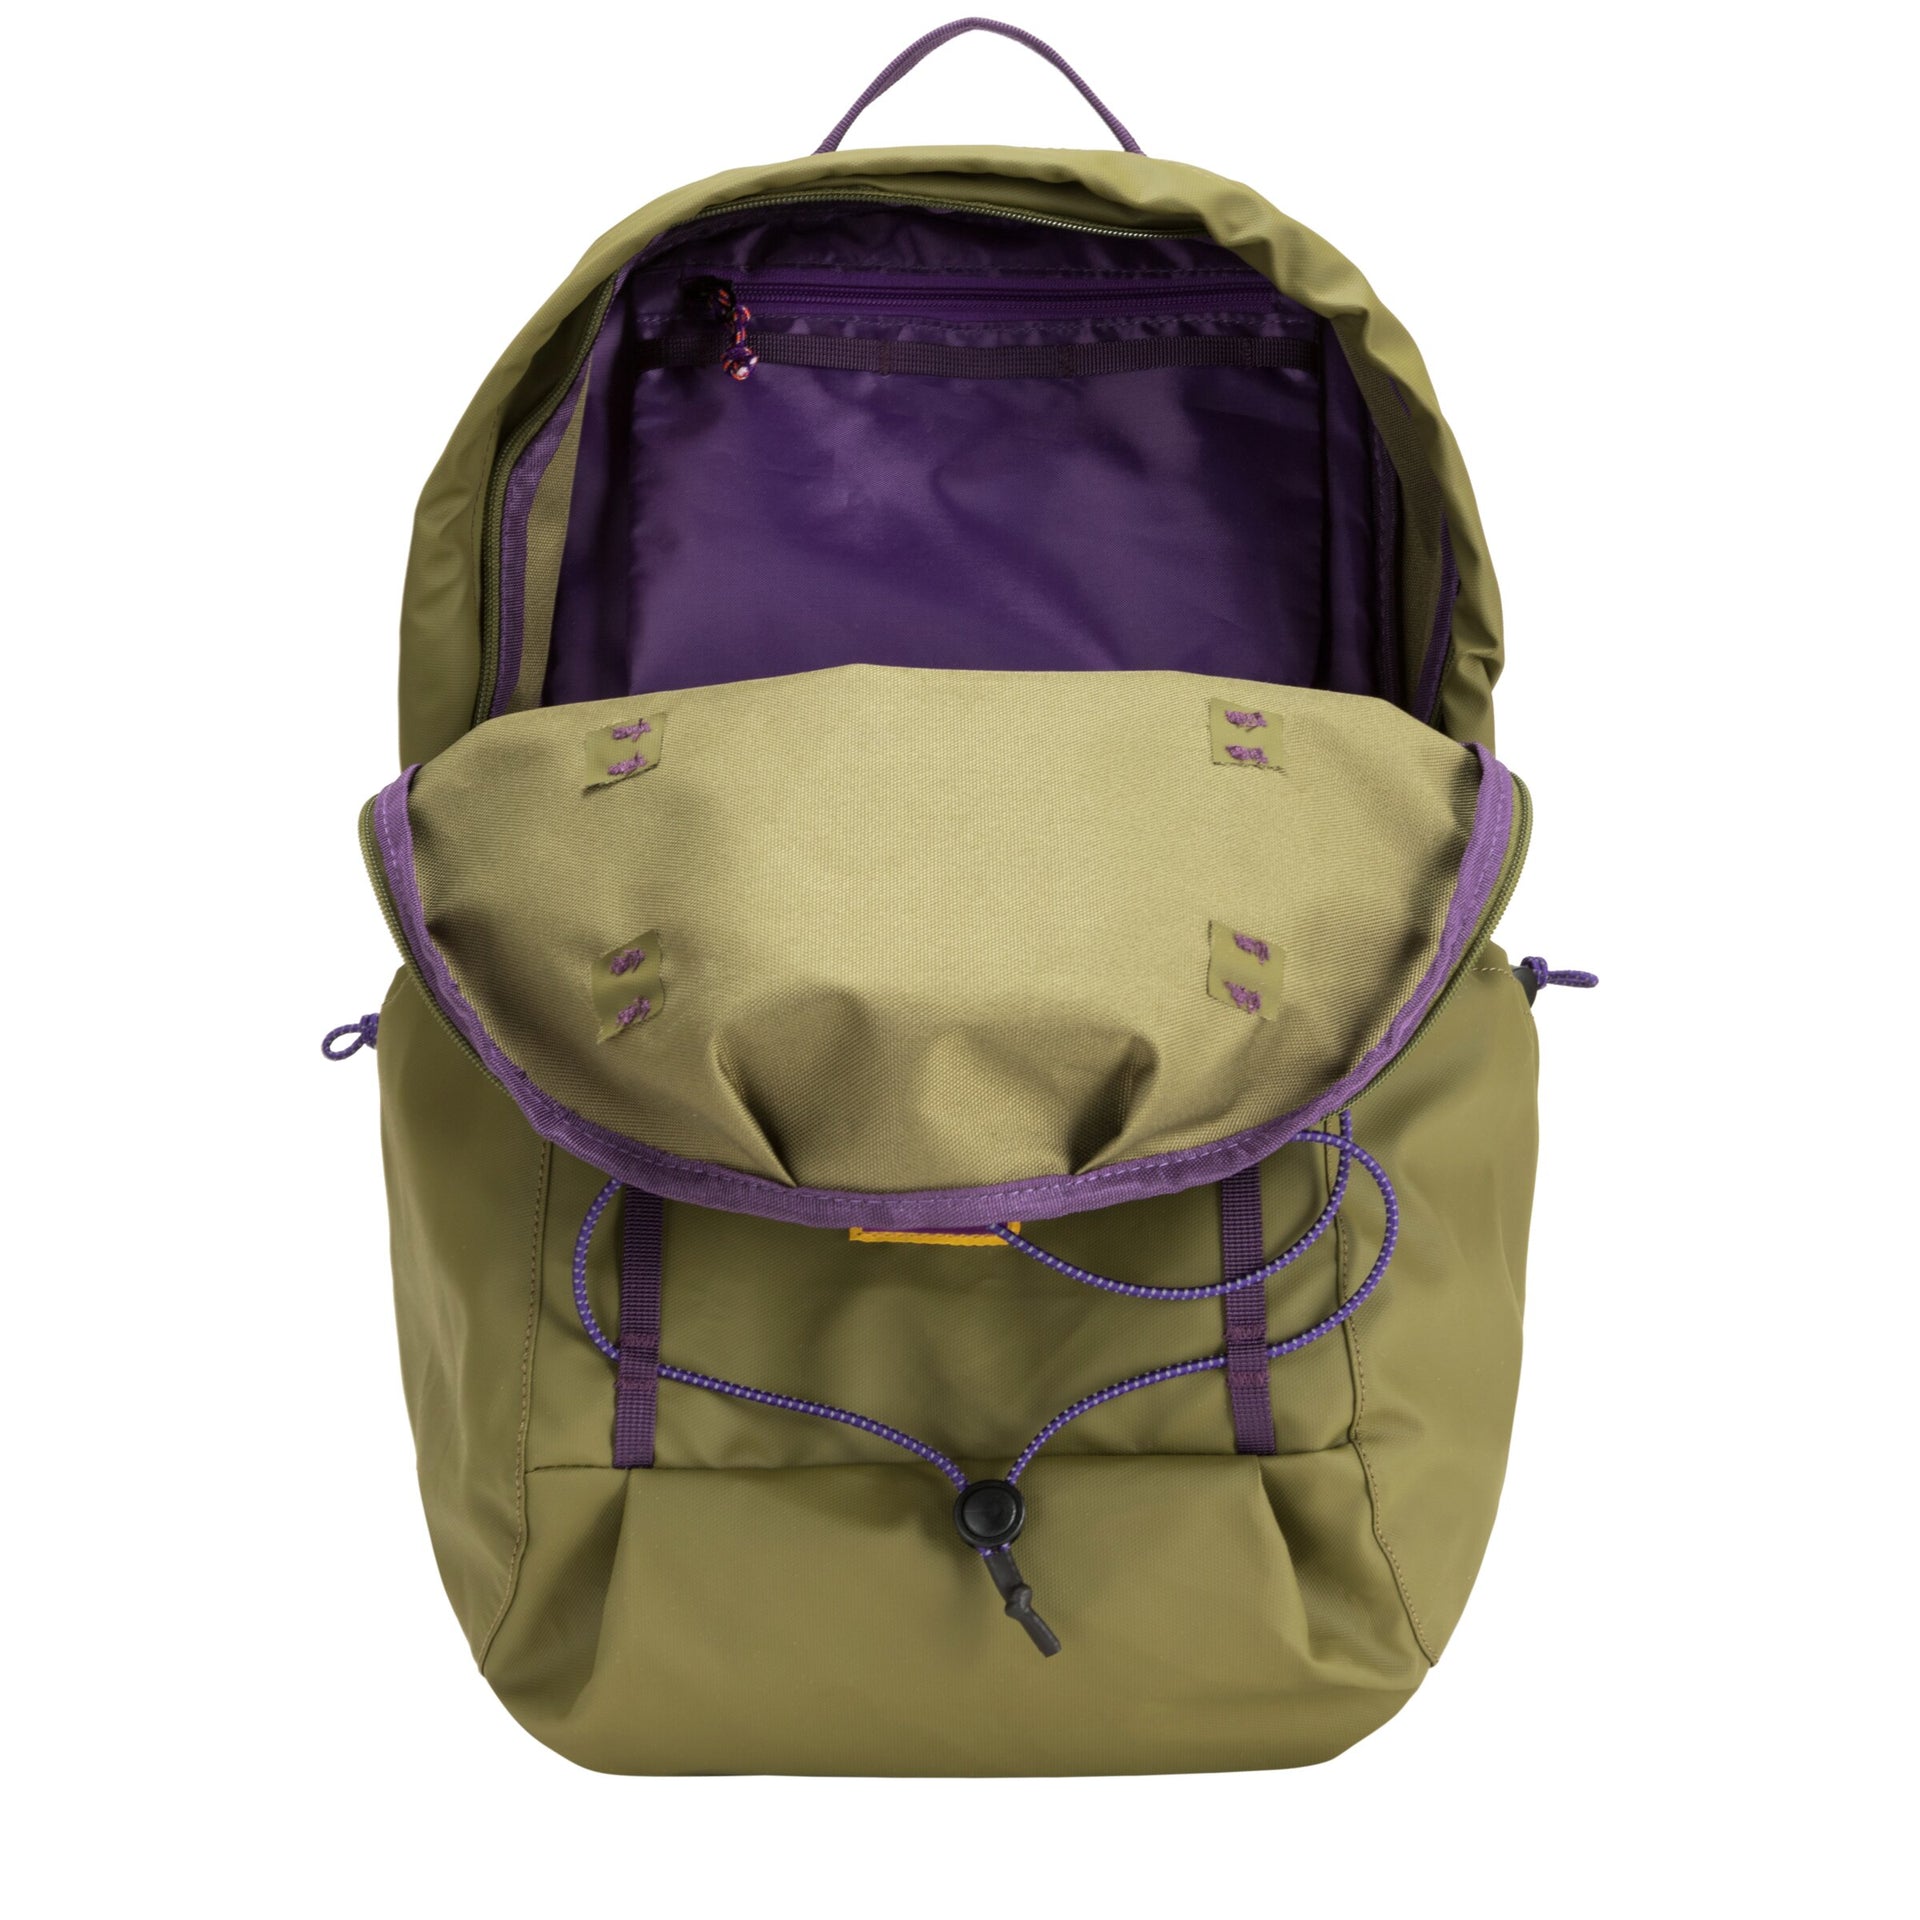 Hikerdelic Kiln 22L Backpack - Khaki